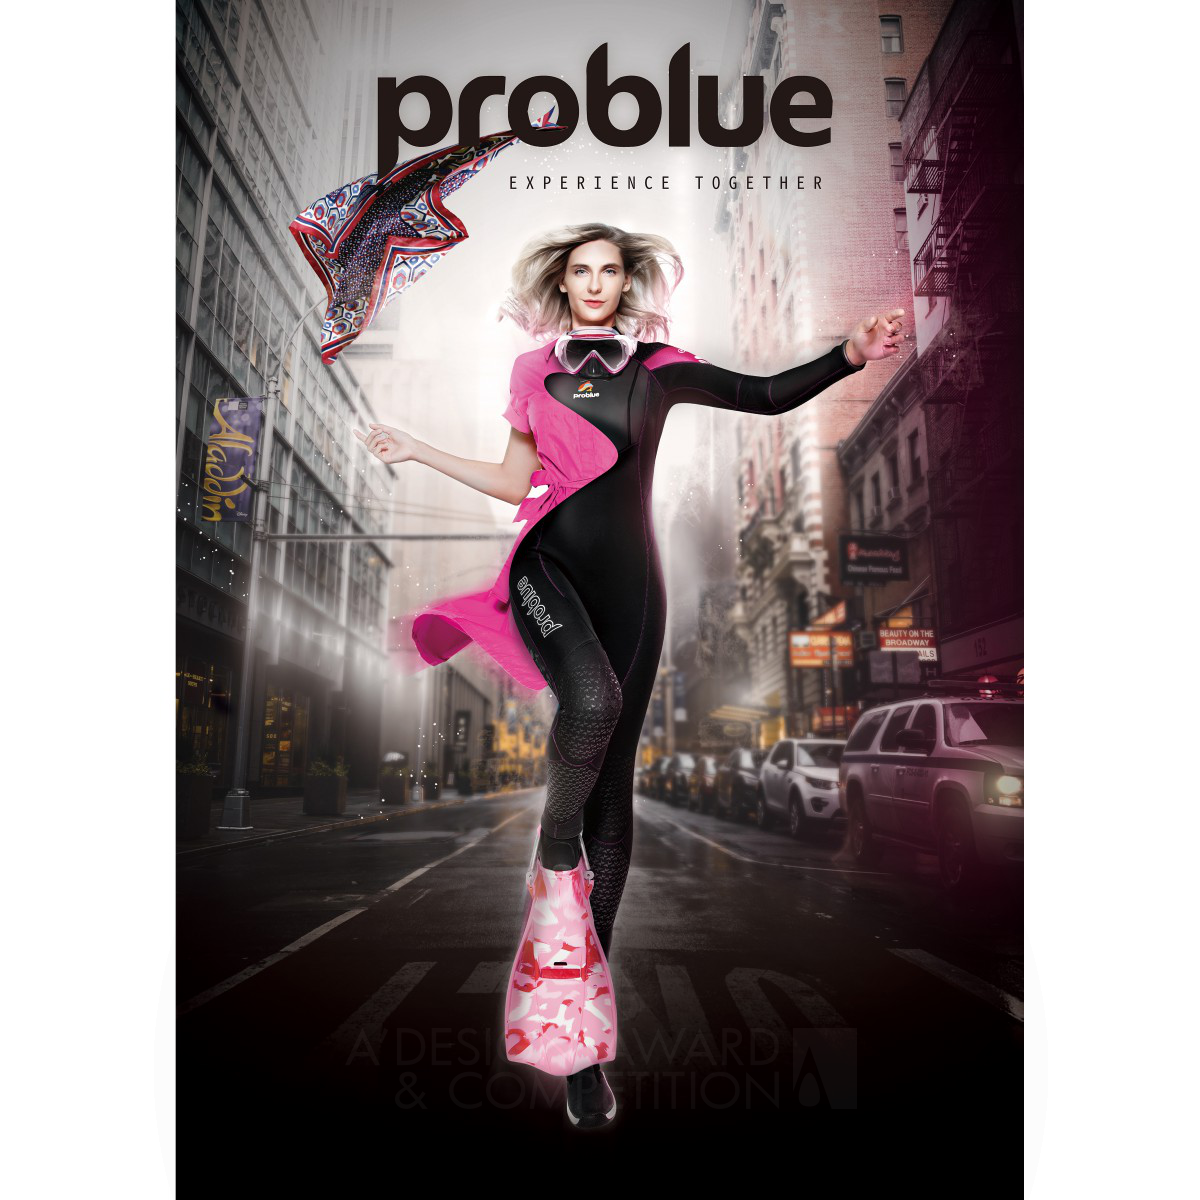 Problue Annual Posters: Die perfekte Verschmelzung von Mode und Tauchen